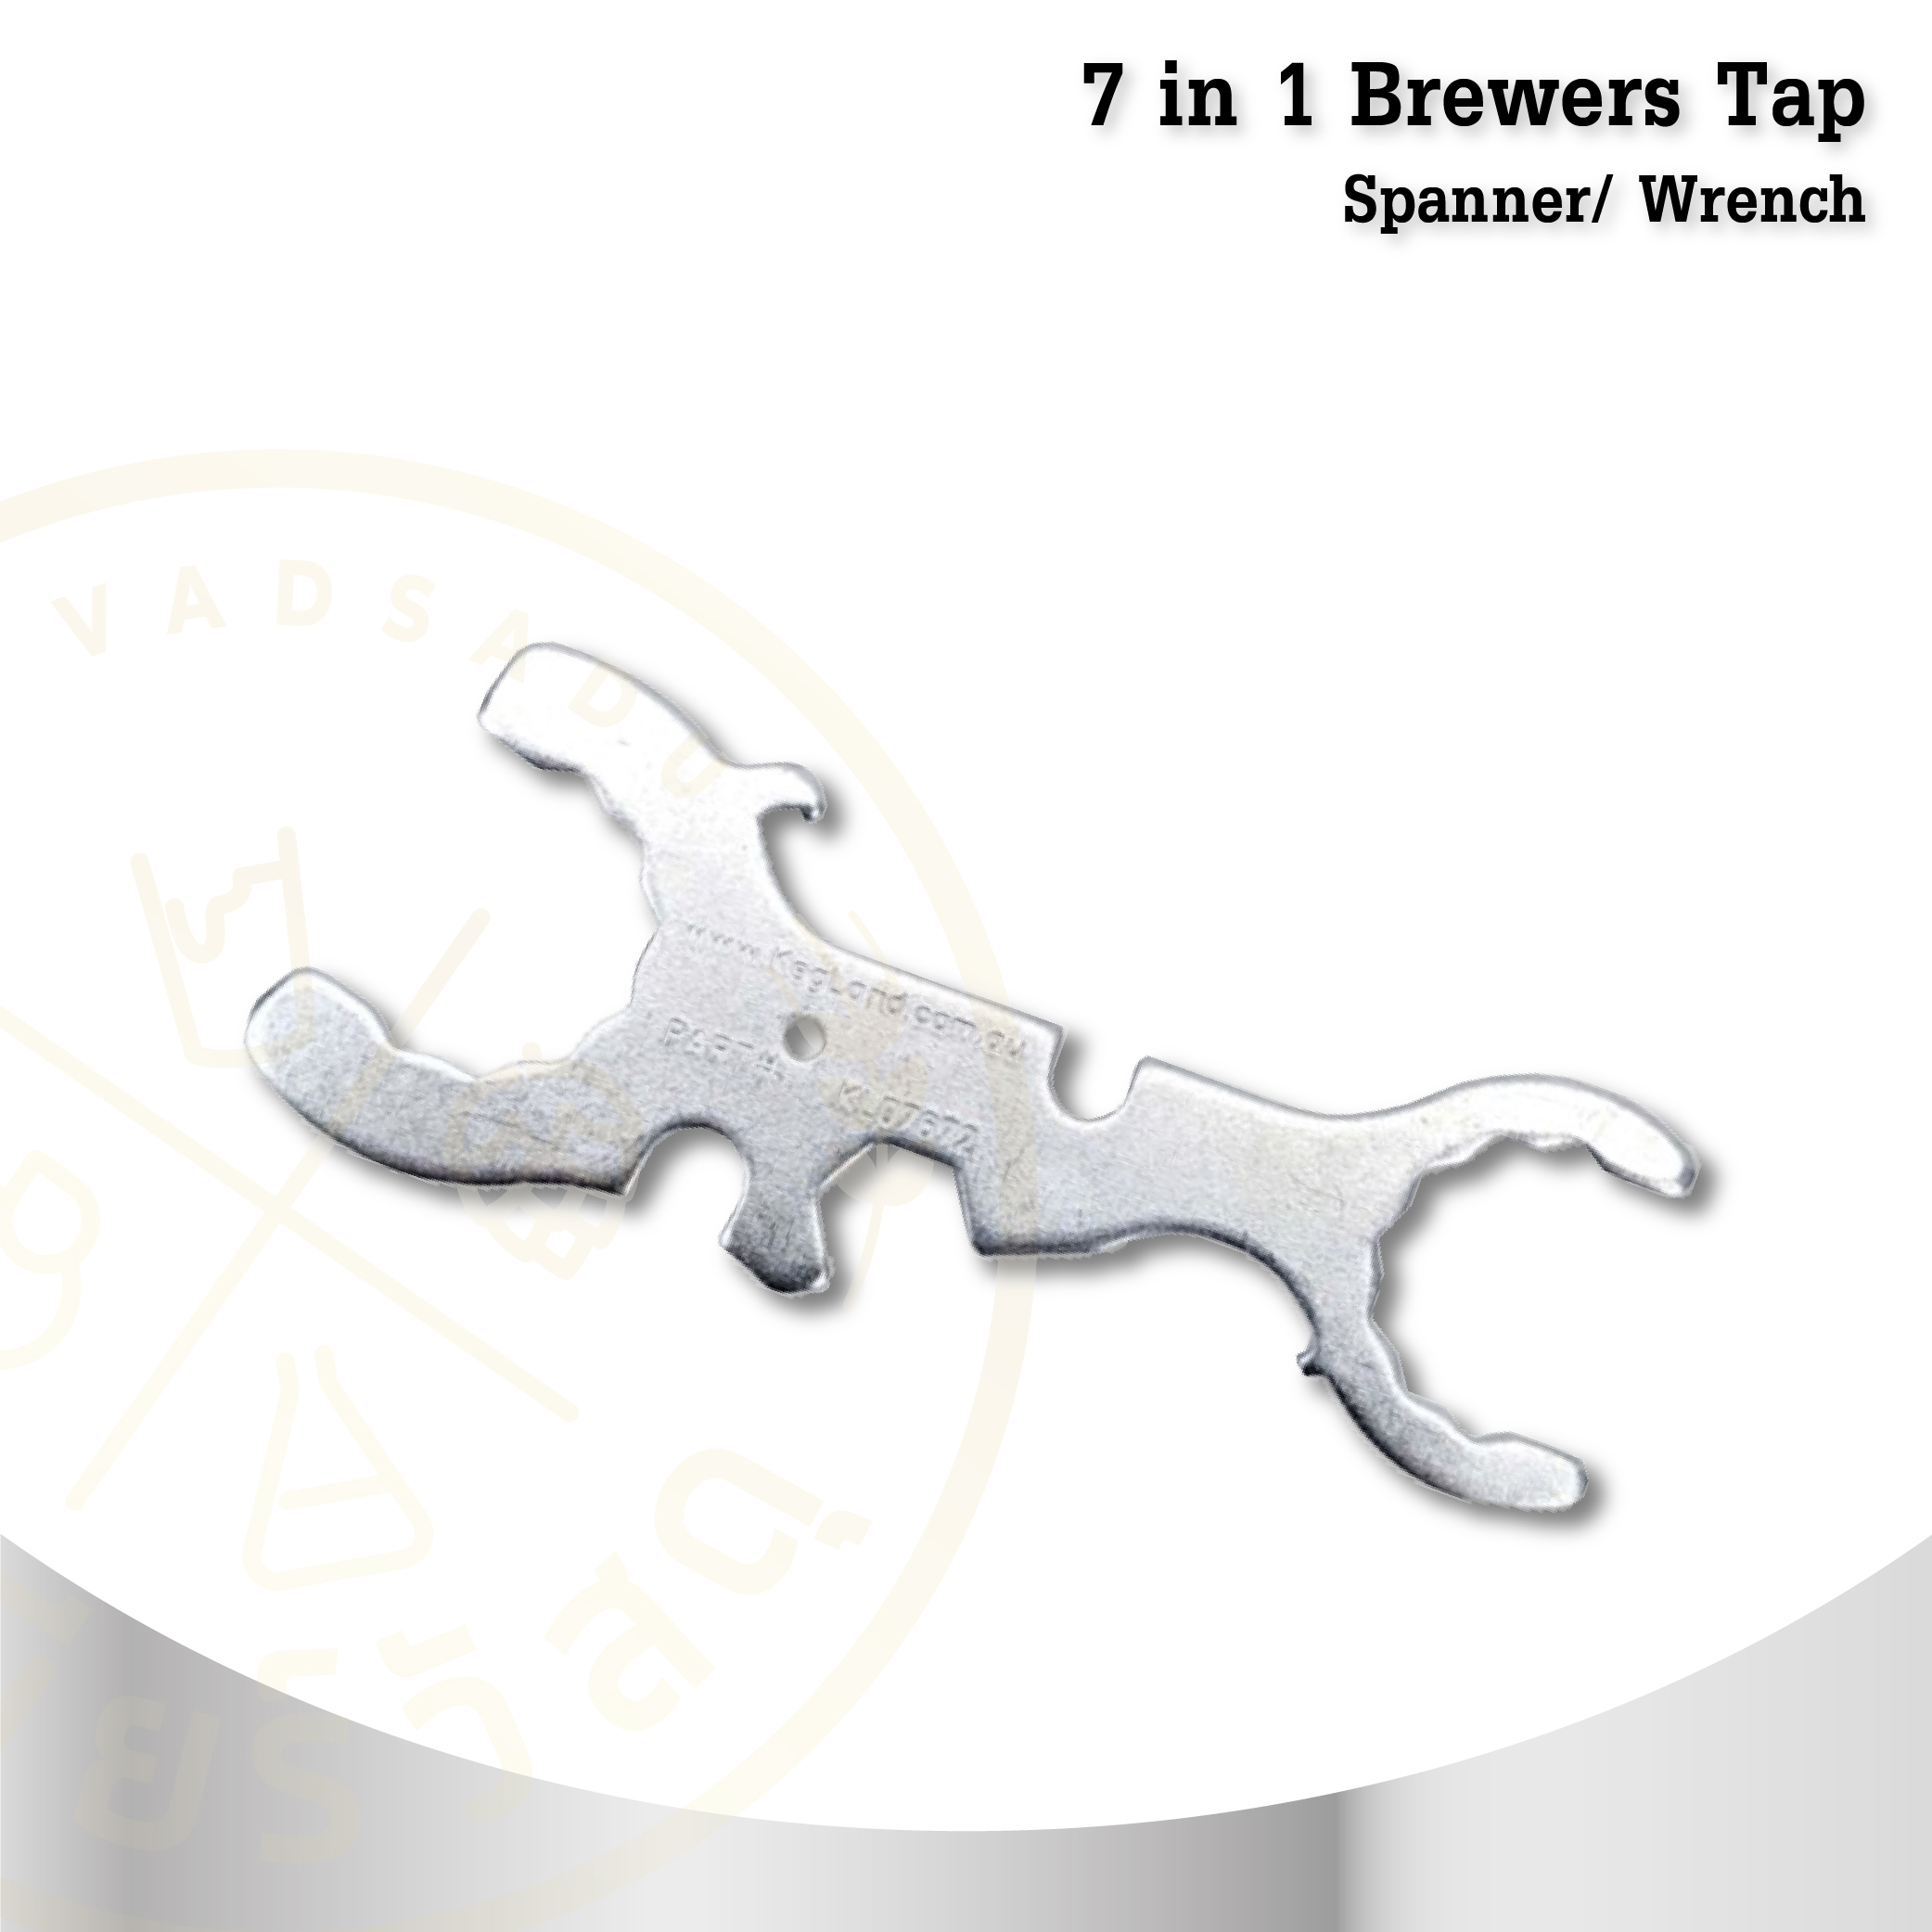 ประแจอเนกประสงค์ 7 in 1 Brewers Tap Spanner/ Wrench